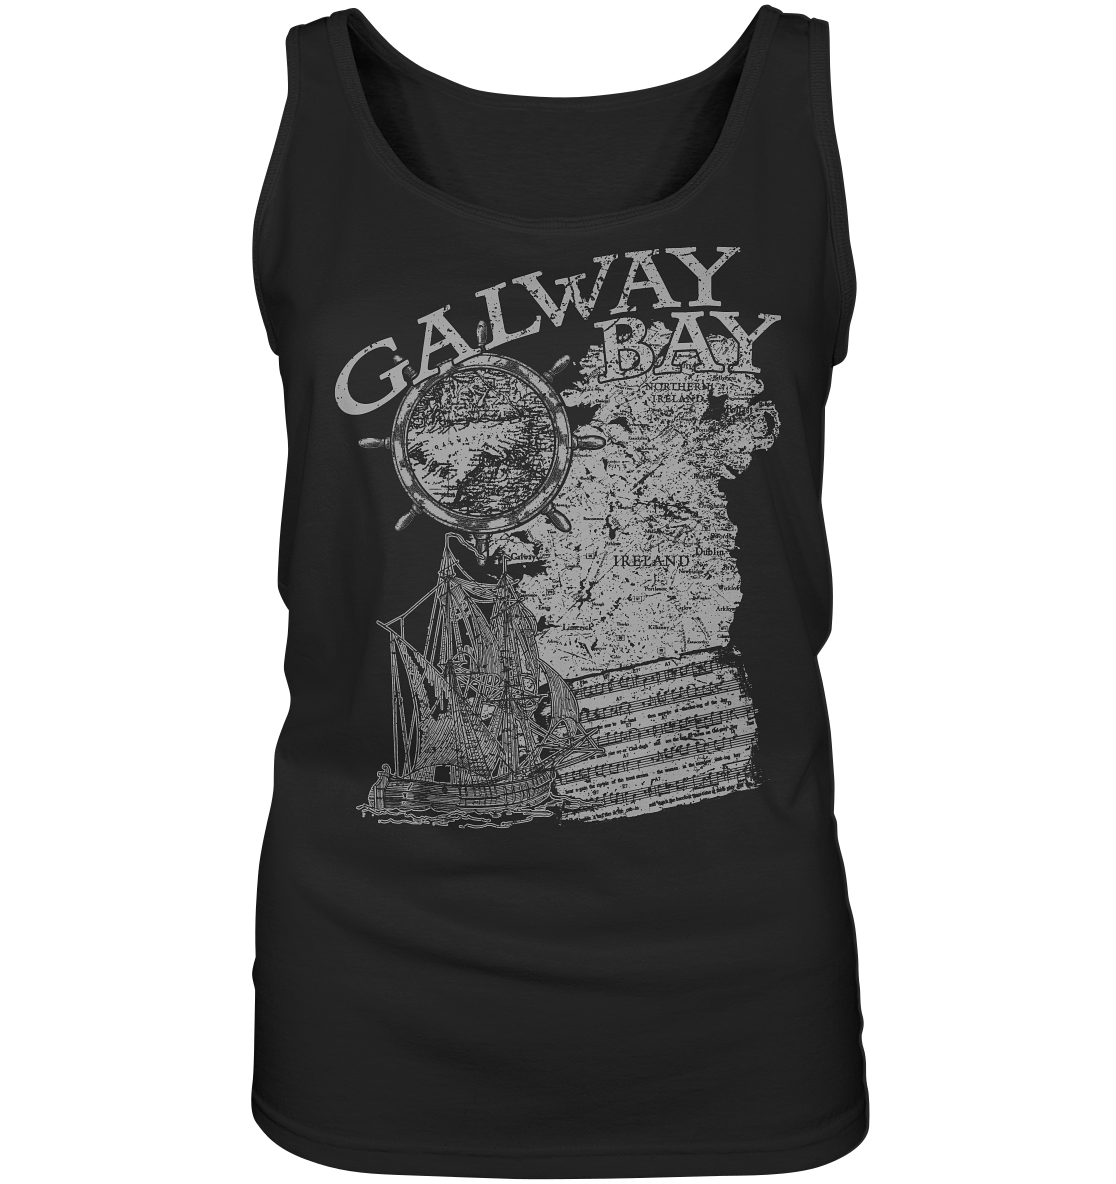 "Galway Bay" - Ladies Tank-Top